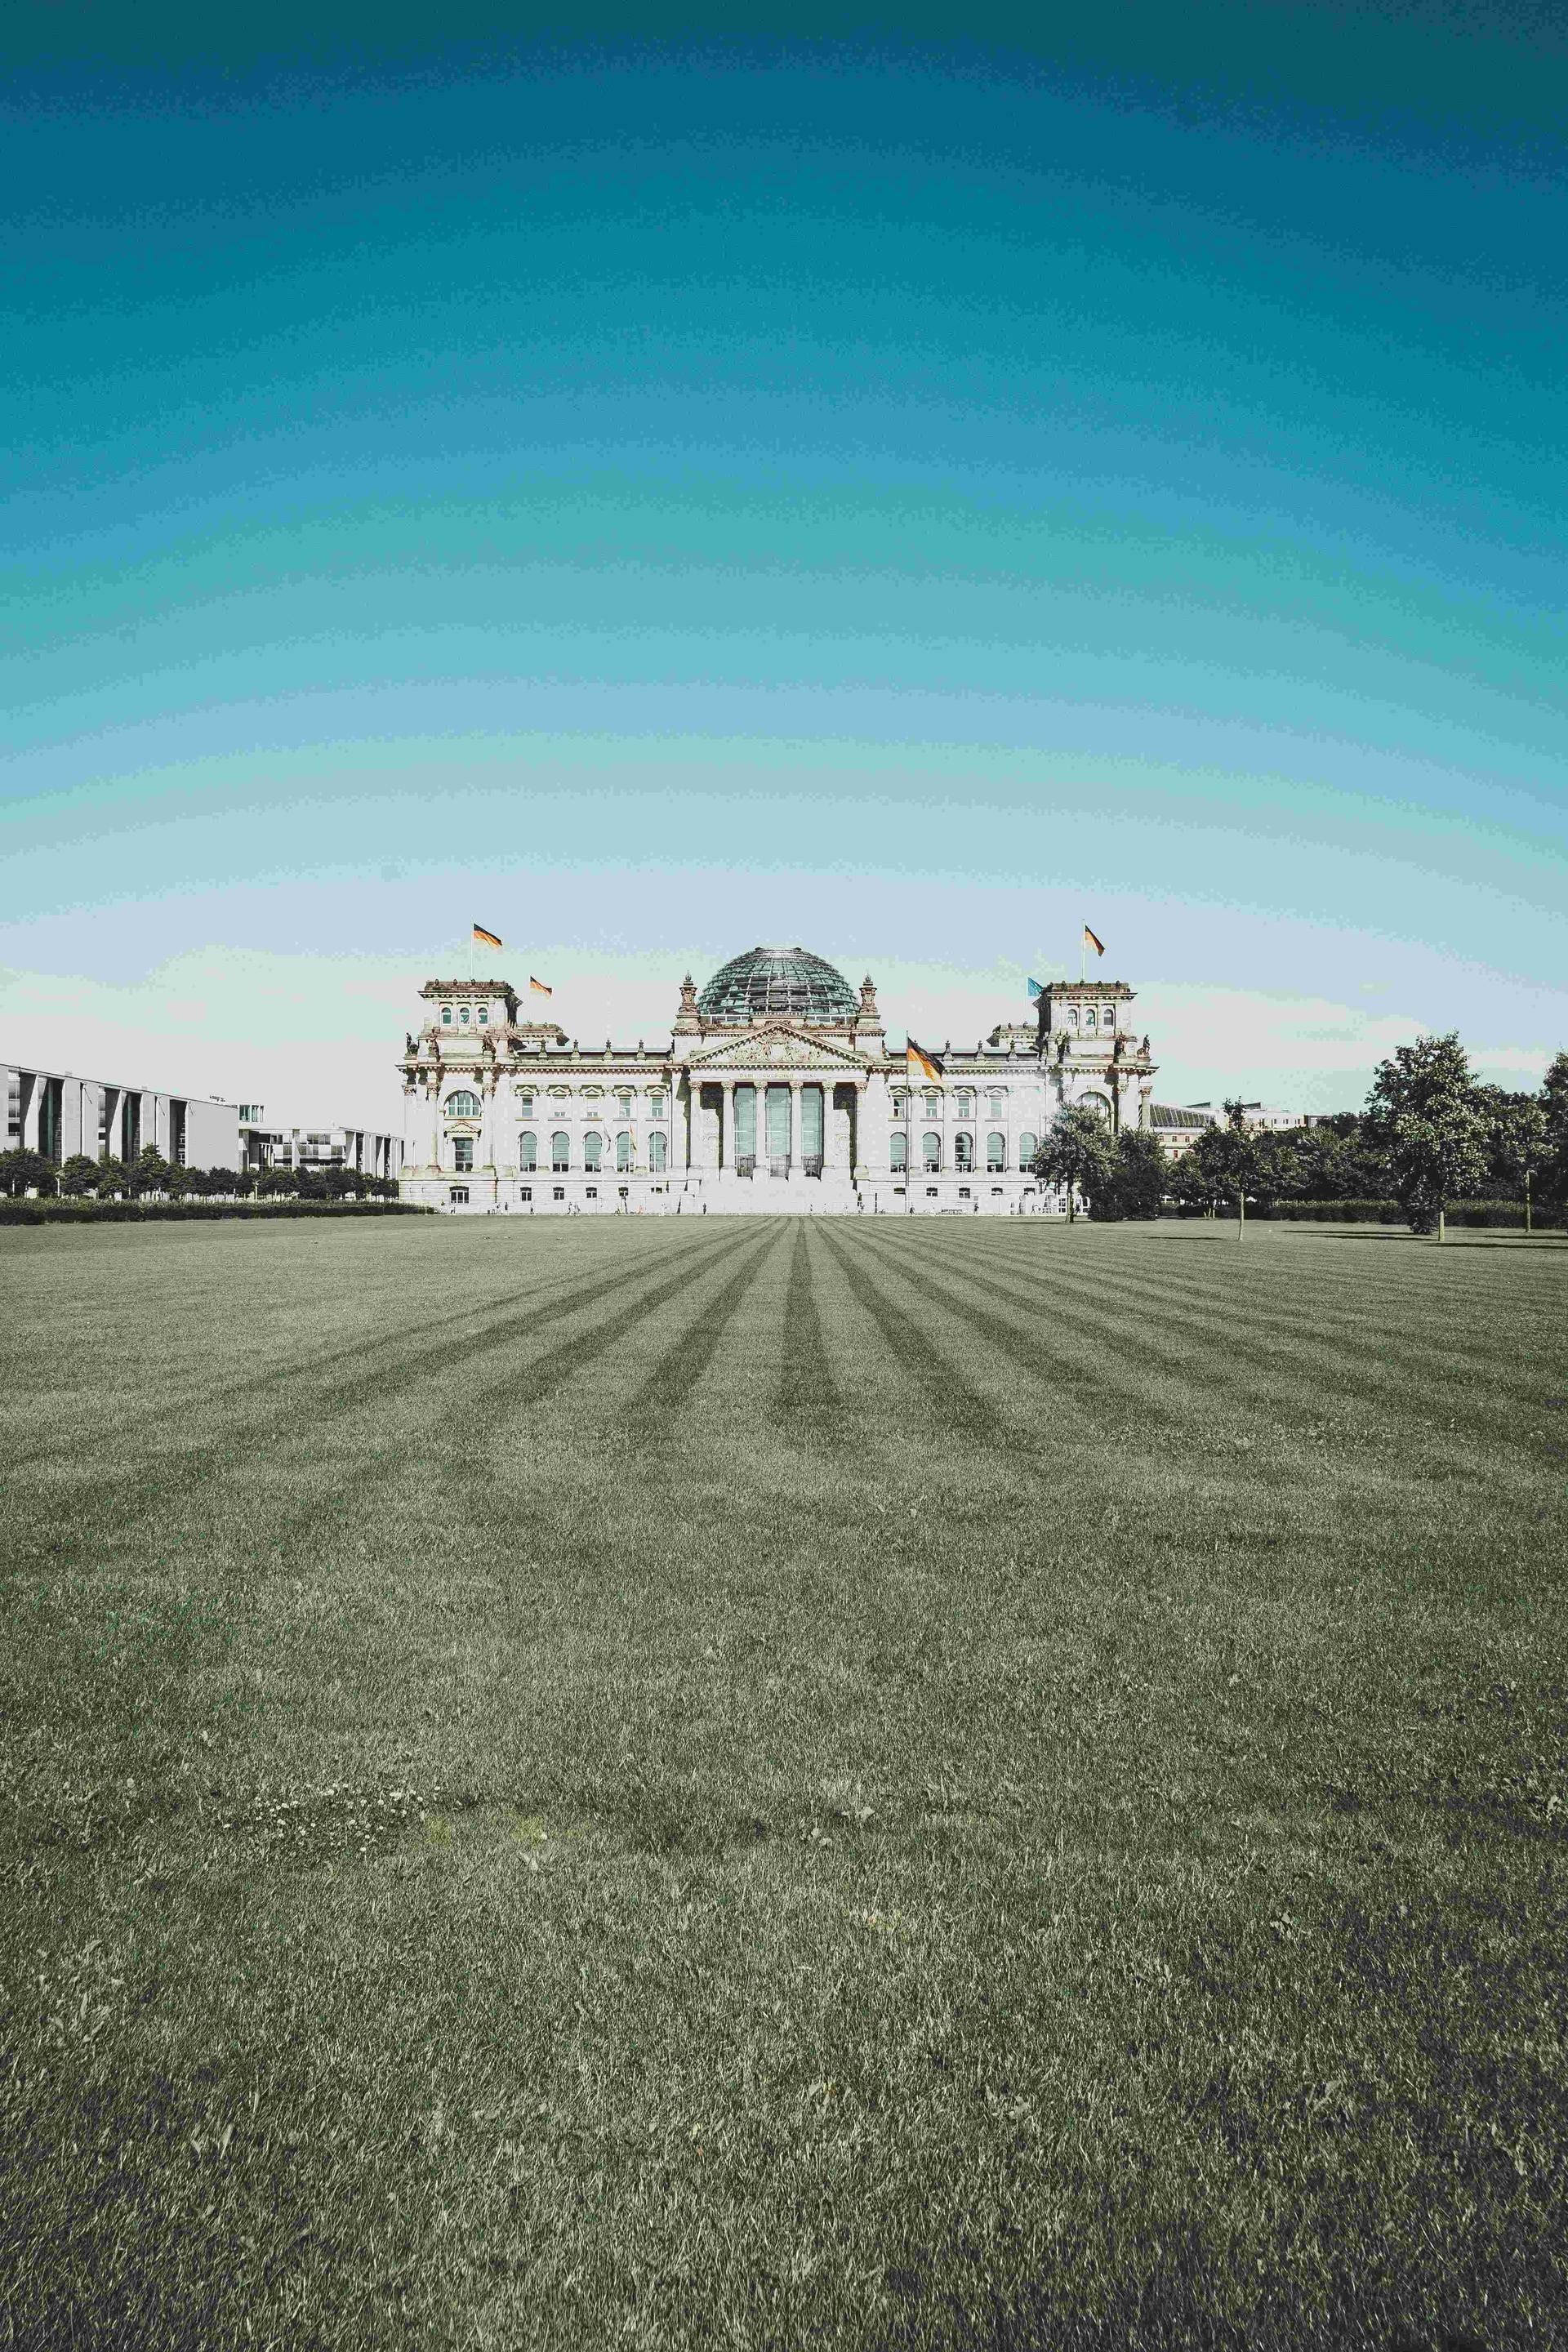 The German Bundestag